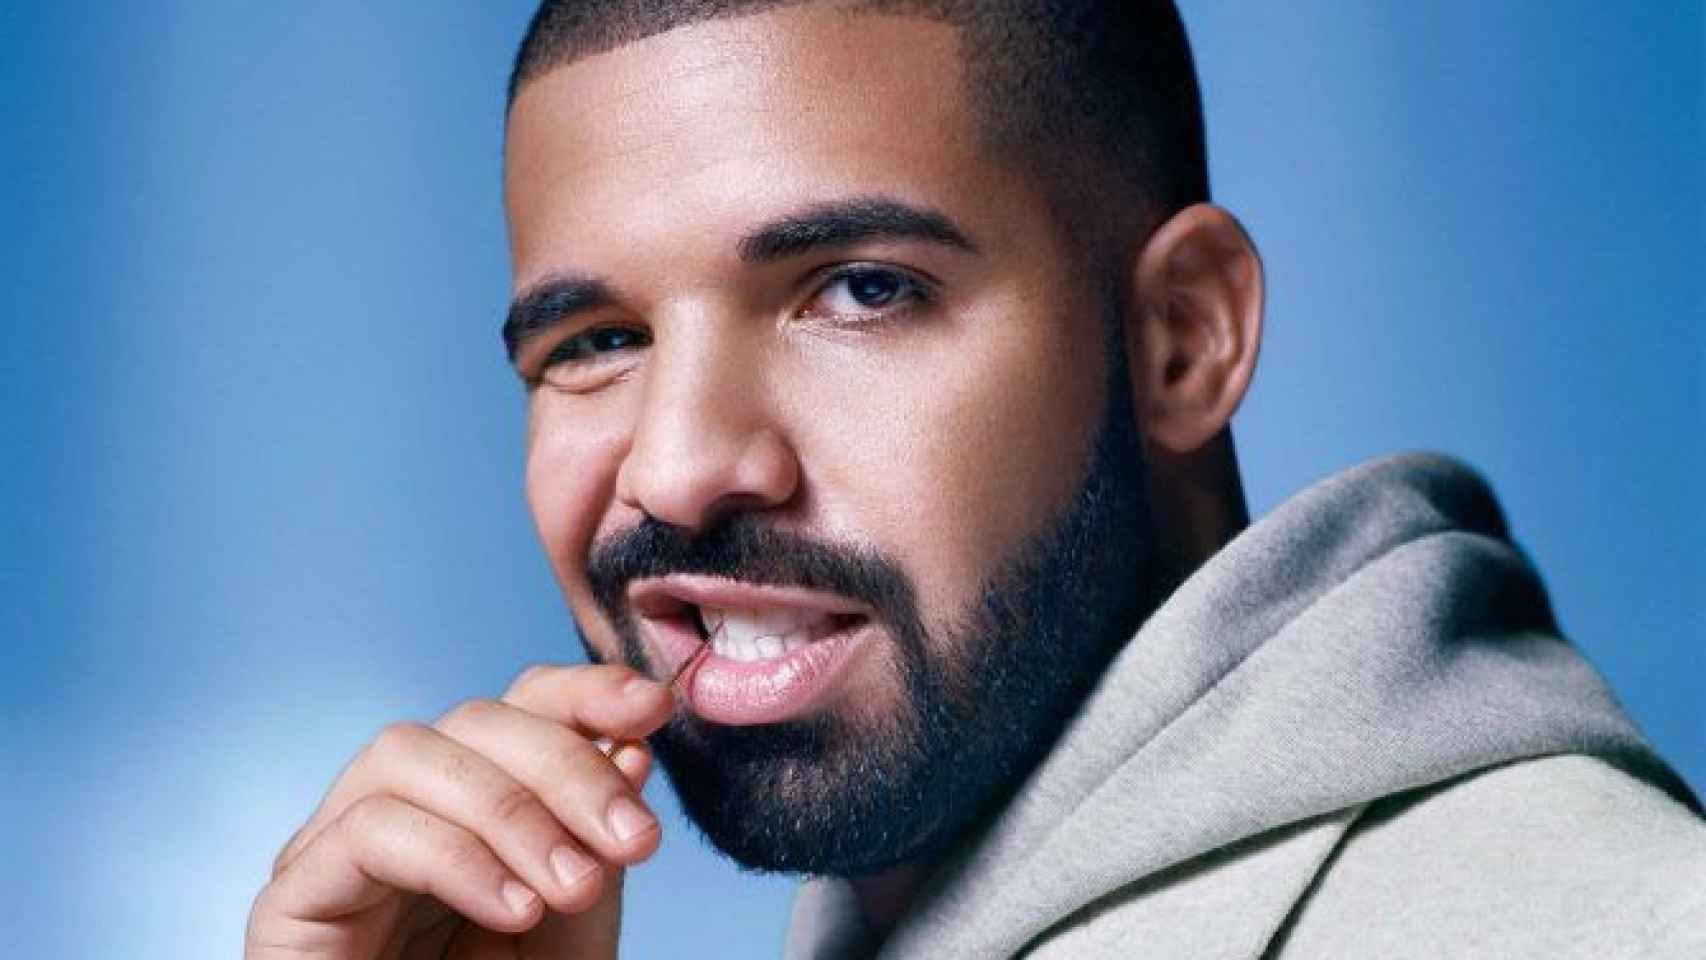 El tema 'In my Feelings' de Drake ha conseguido ser uno de los más virales en la red